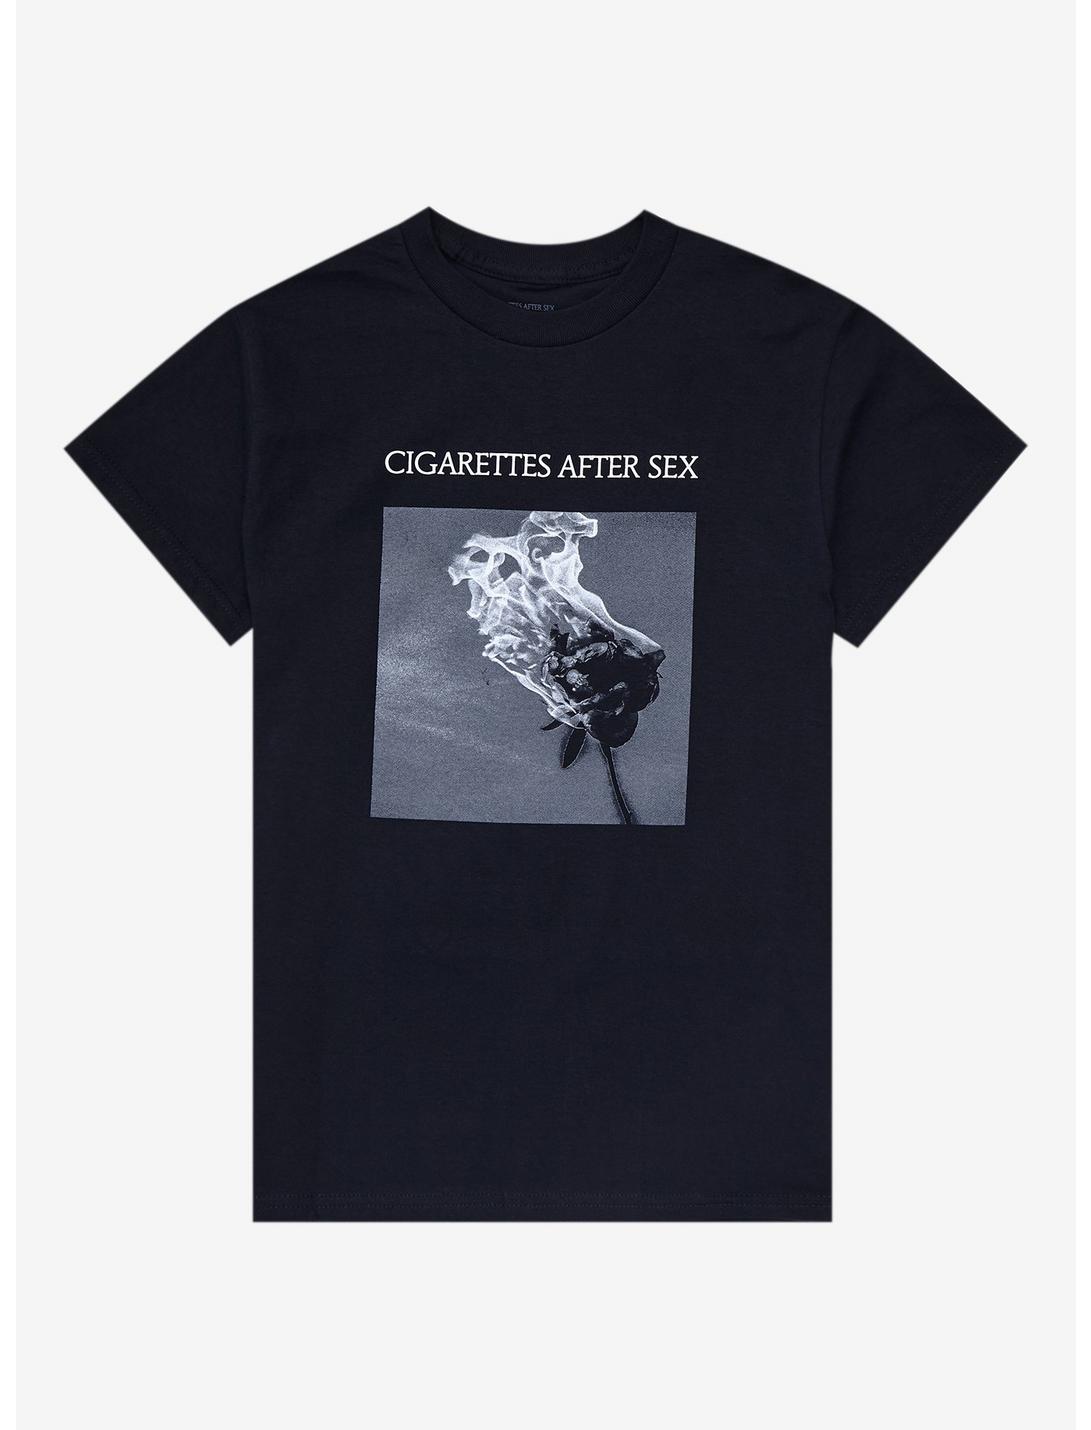 Cigarettes After Sex Burning Rose Boyfriend Fit Girls T-Shirt, BLACK, hi-res